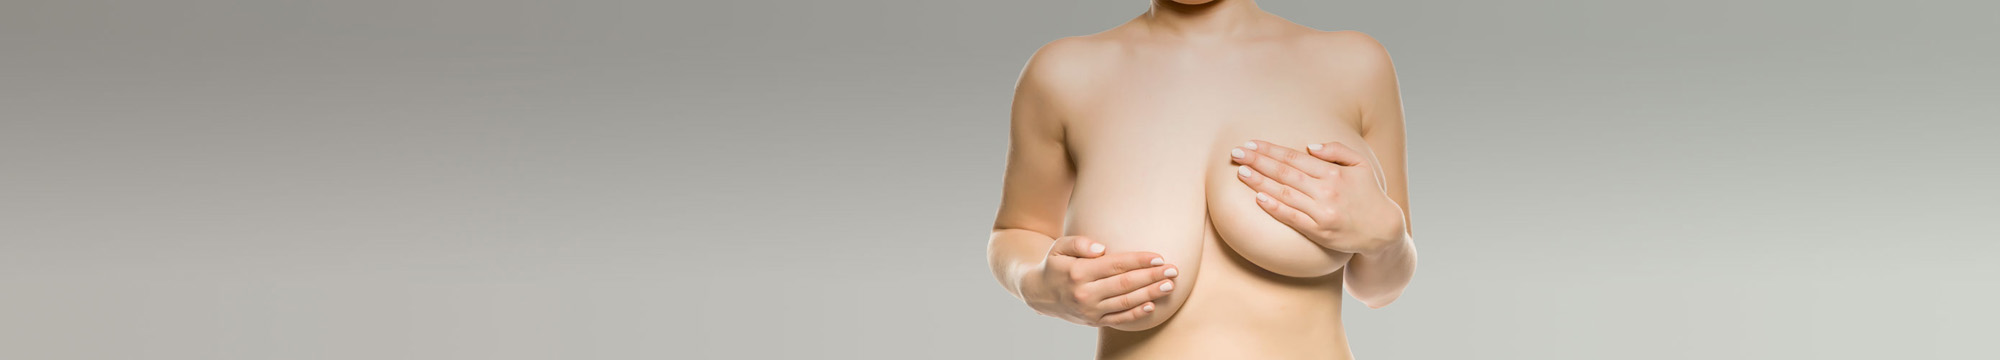 Titelbild für die Behandlung Bruststraffung der Chirurgie Betzler in Köln